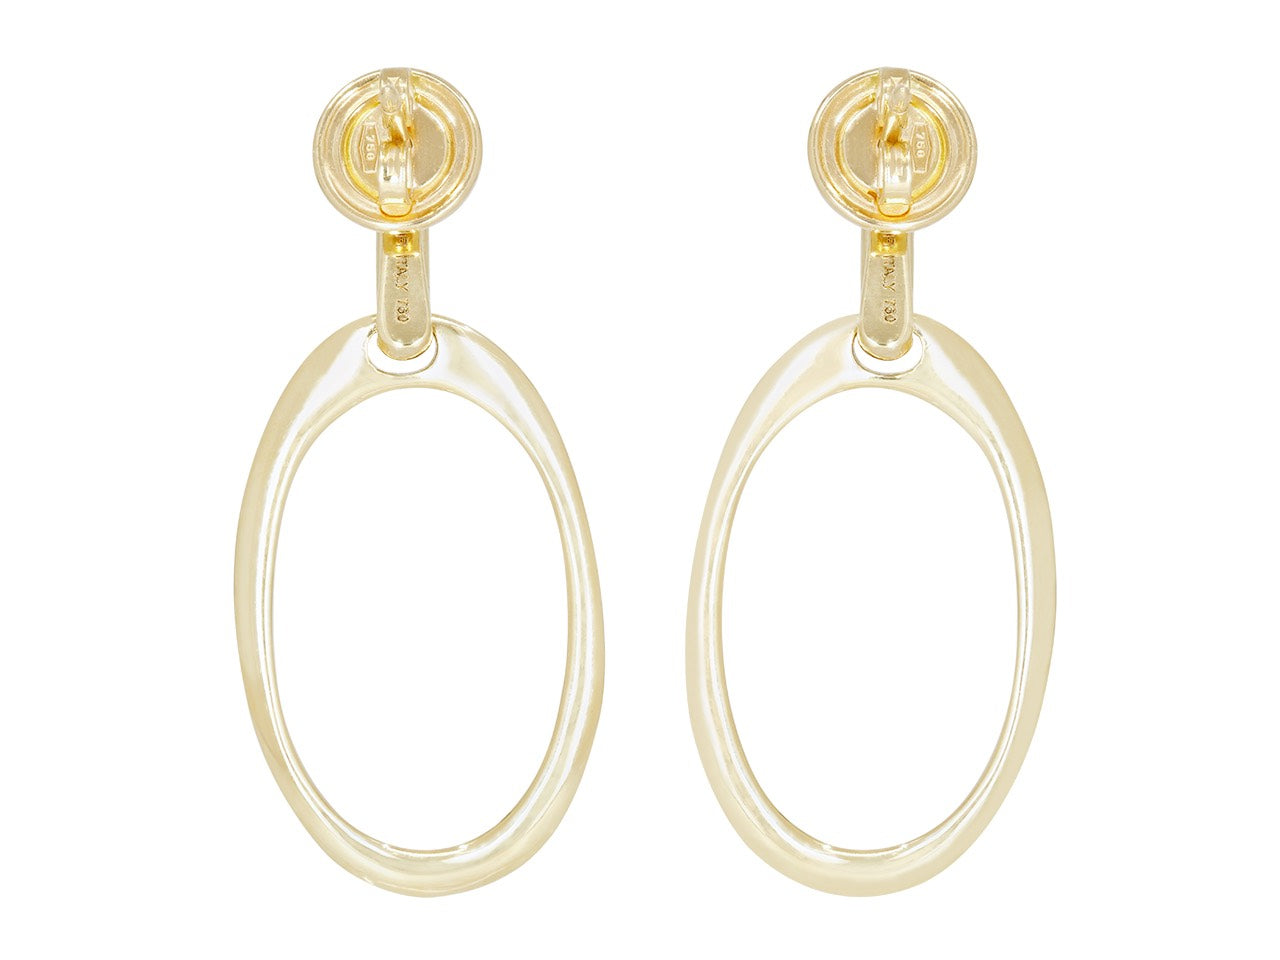 Oval Hoop Earrings with Diamond Tops in 18K Gold, by Beladora